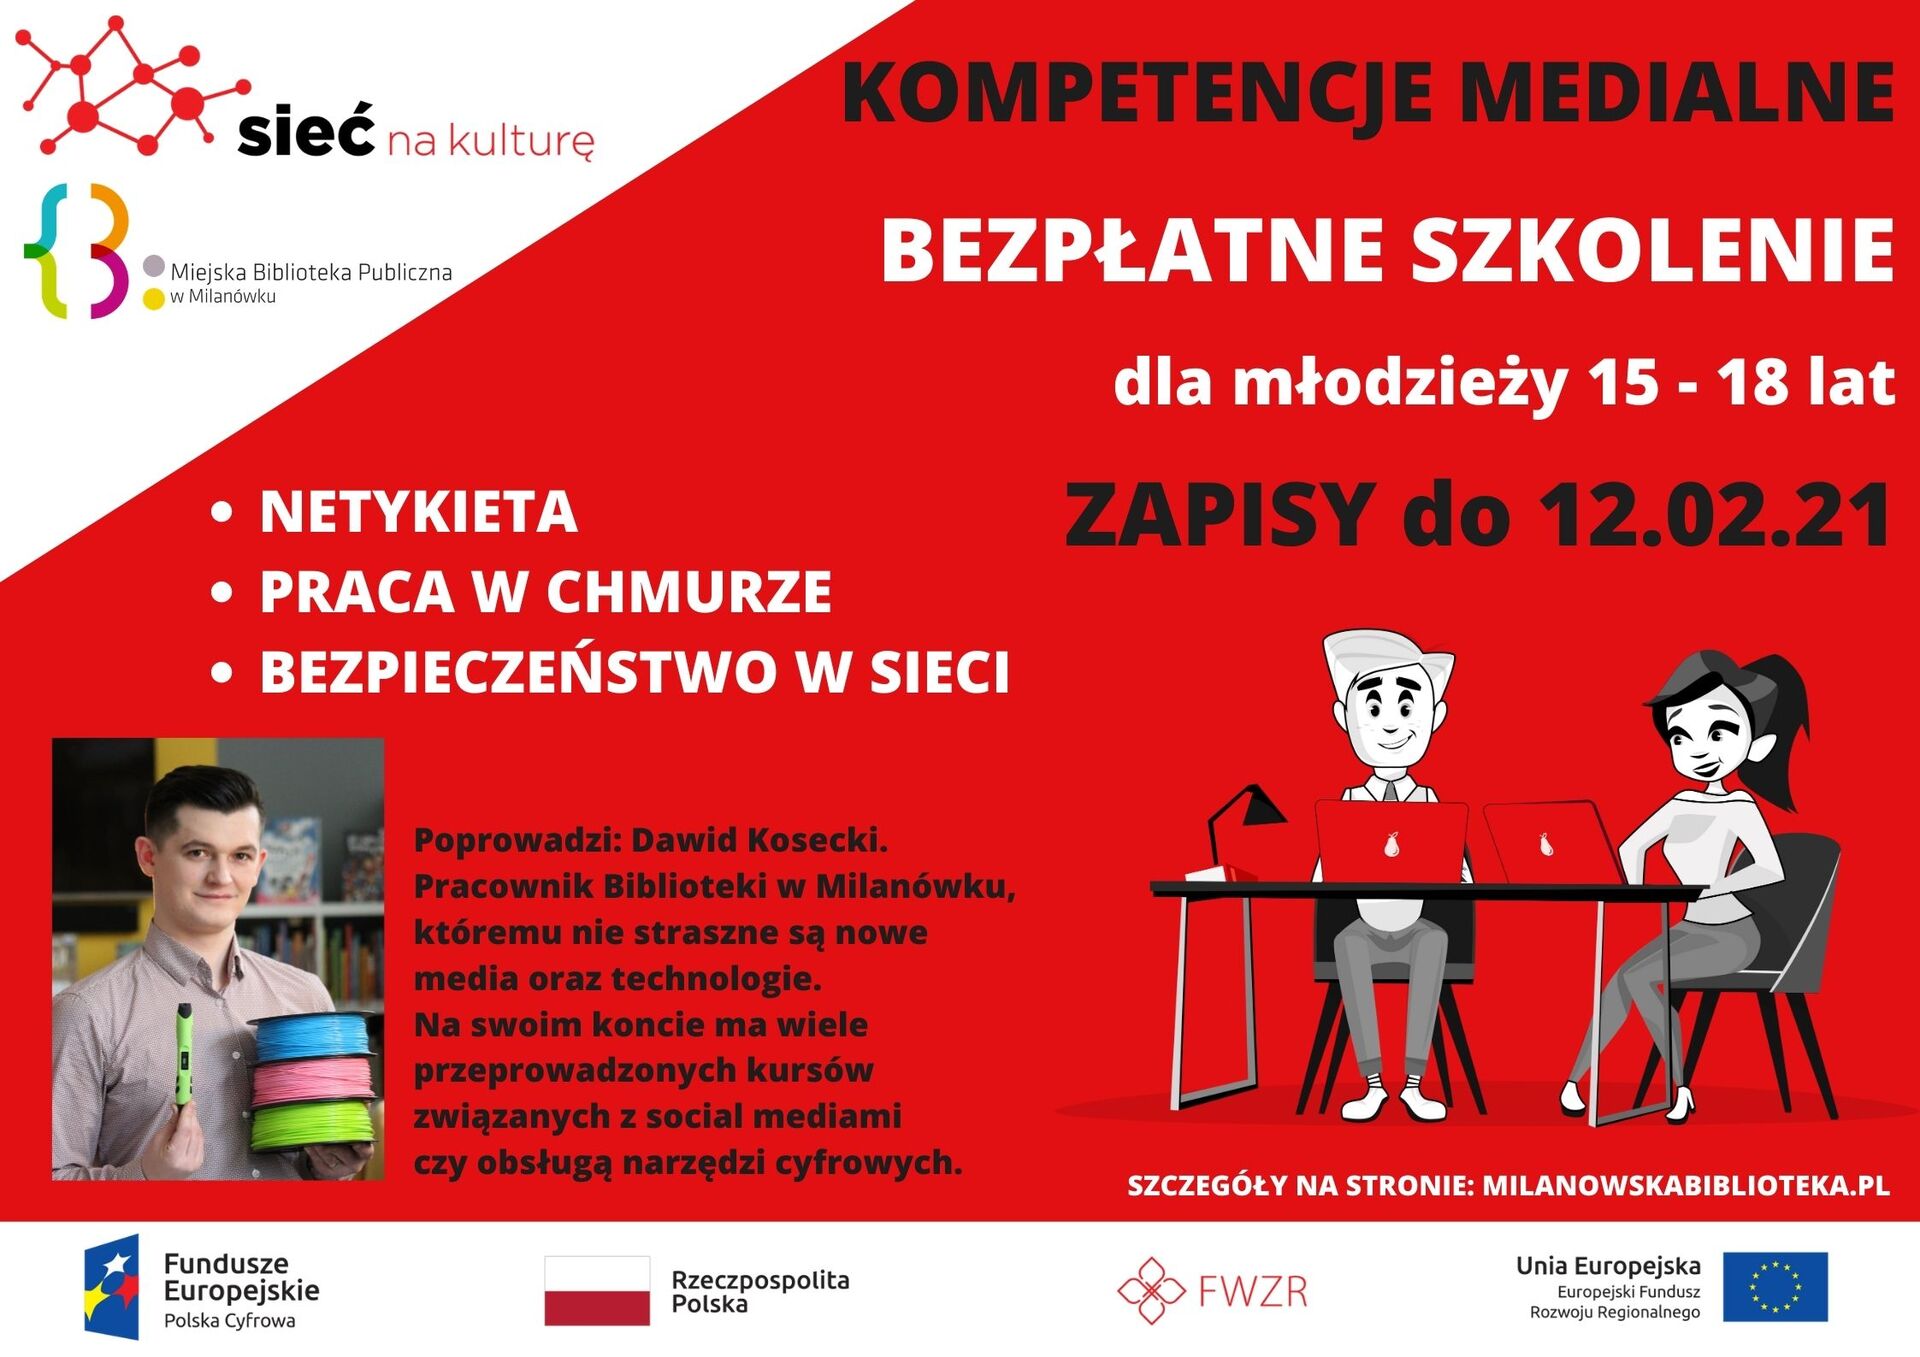 Szkolenie 'Kompetencje medialne' w Bibliotece Miejskiej w Milanówku - plakat